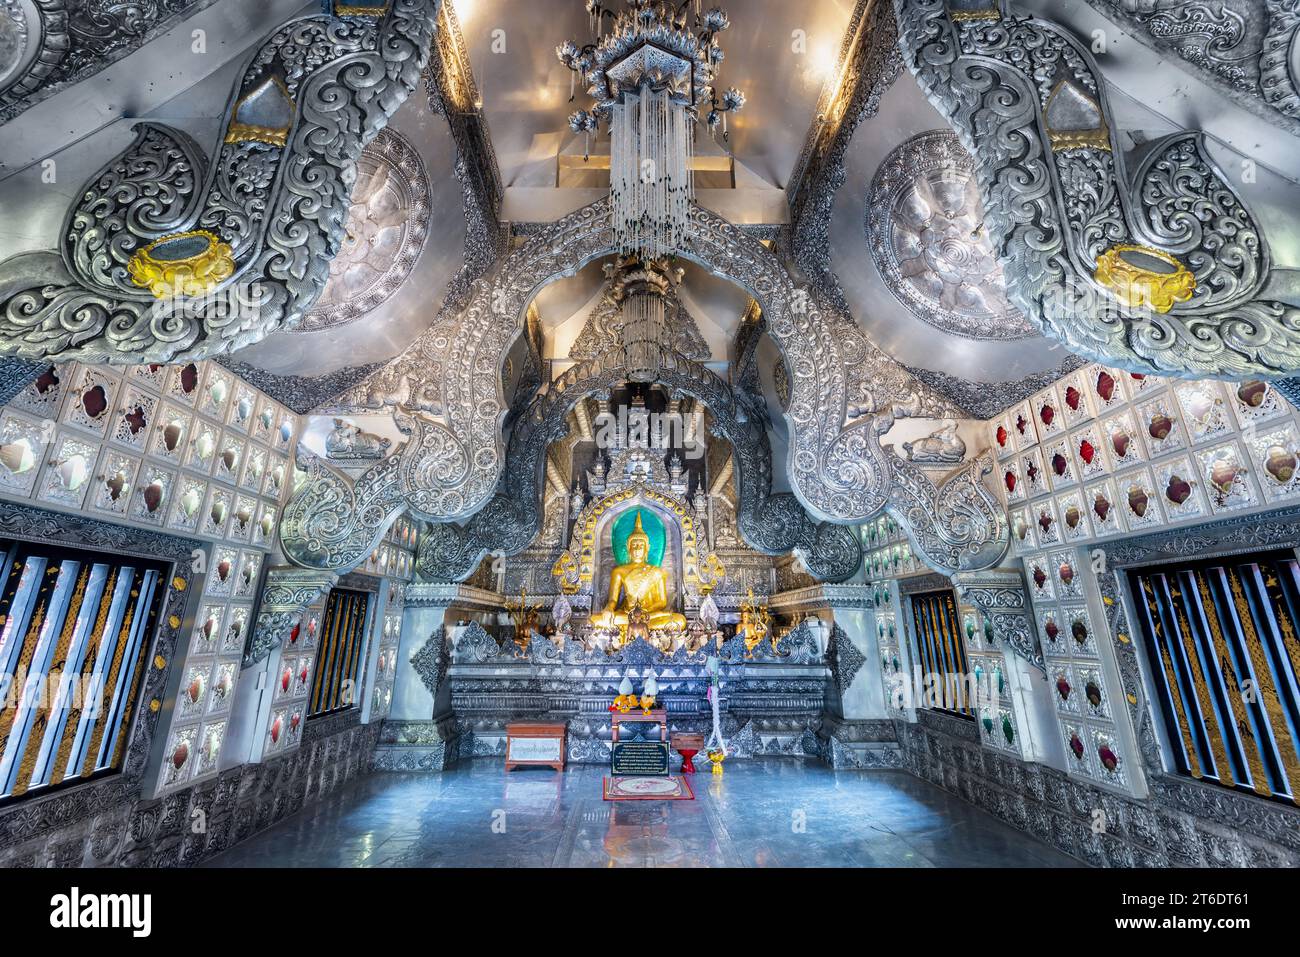 Intérieur de Wat Sri Suphan, temple bouddhiste en métal argenté, vieille ville de Chaingmai, Thaïlande. Banque D'Images